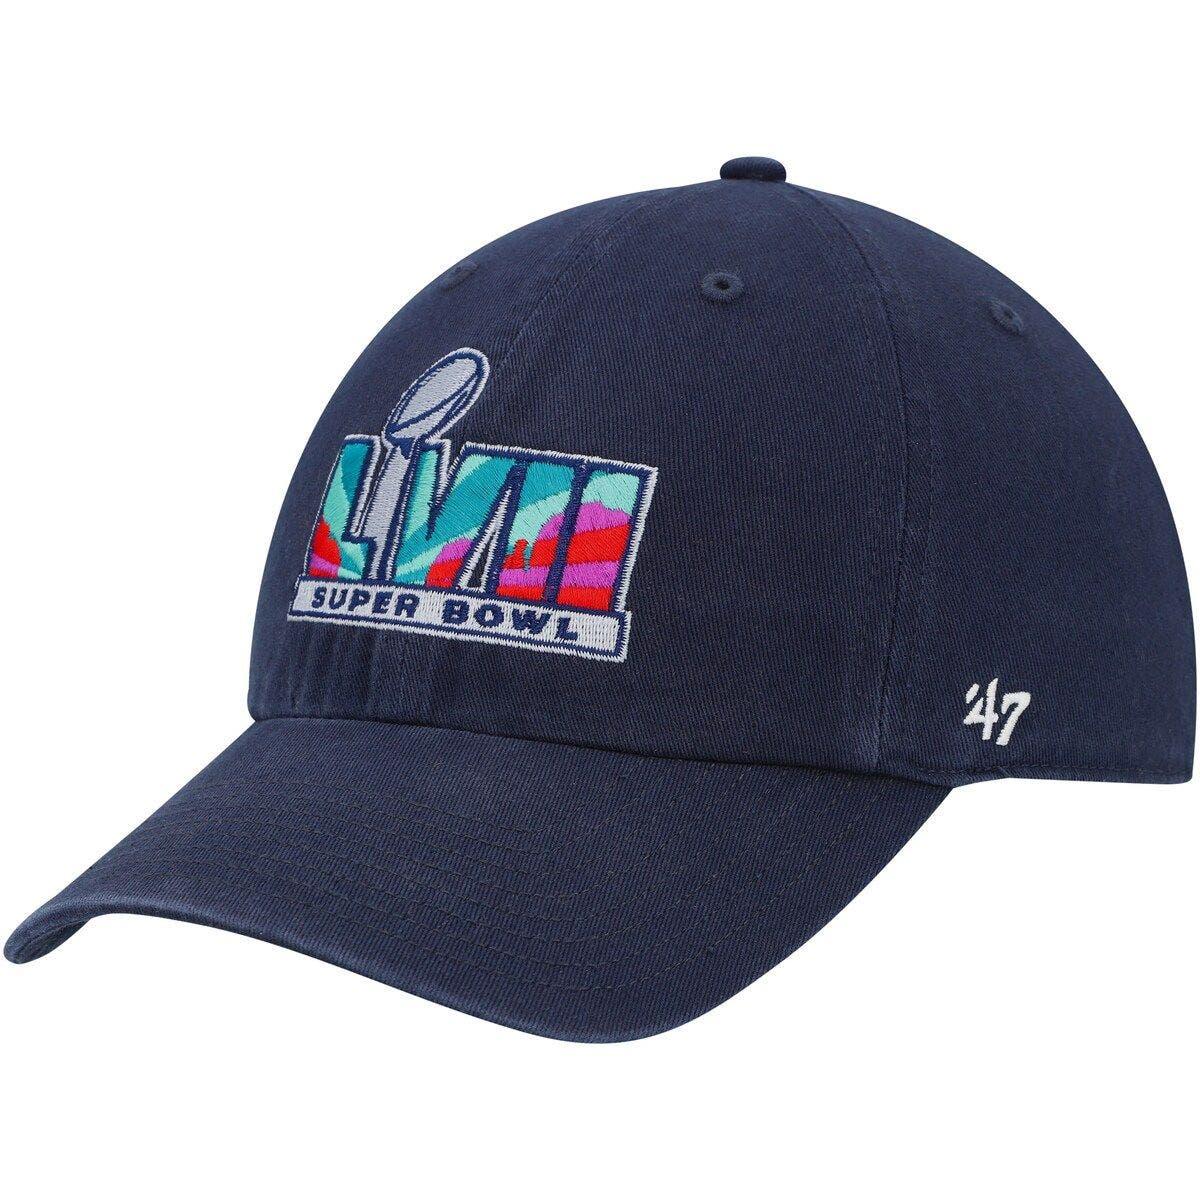 47 Men's Super Bowl LVII AZ Red MVP Adjustable Hat